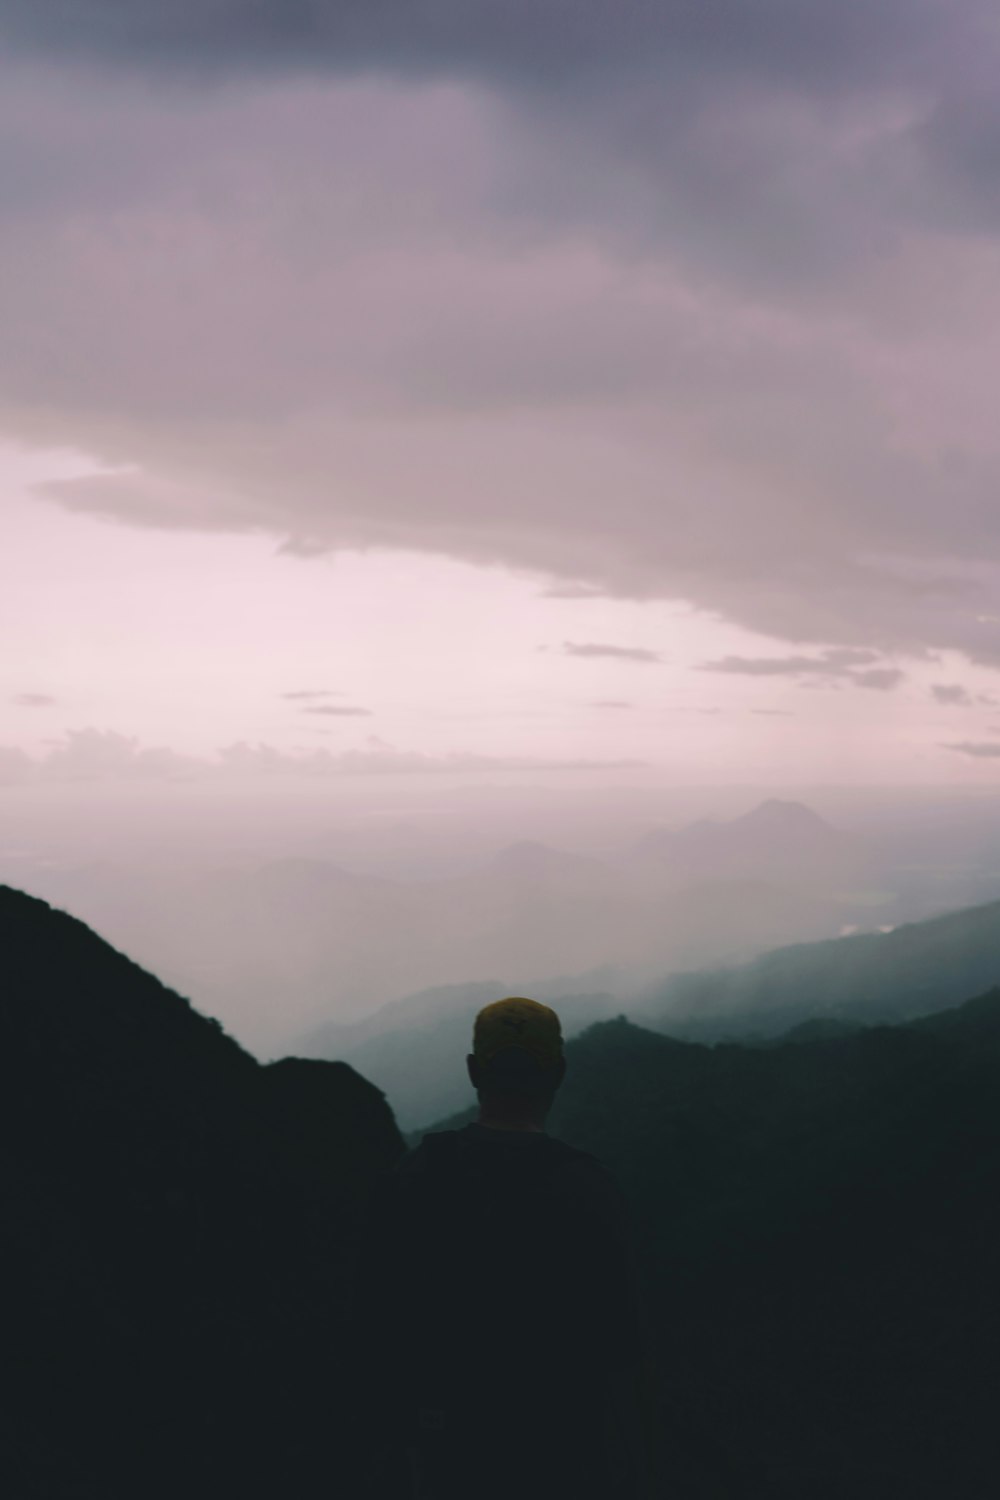 Un hombre parado en la cima de una montaña bajo un cielo nublado